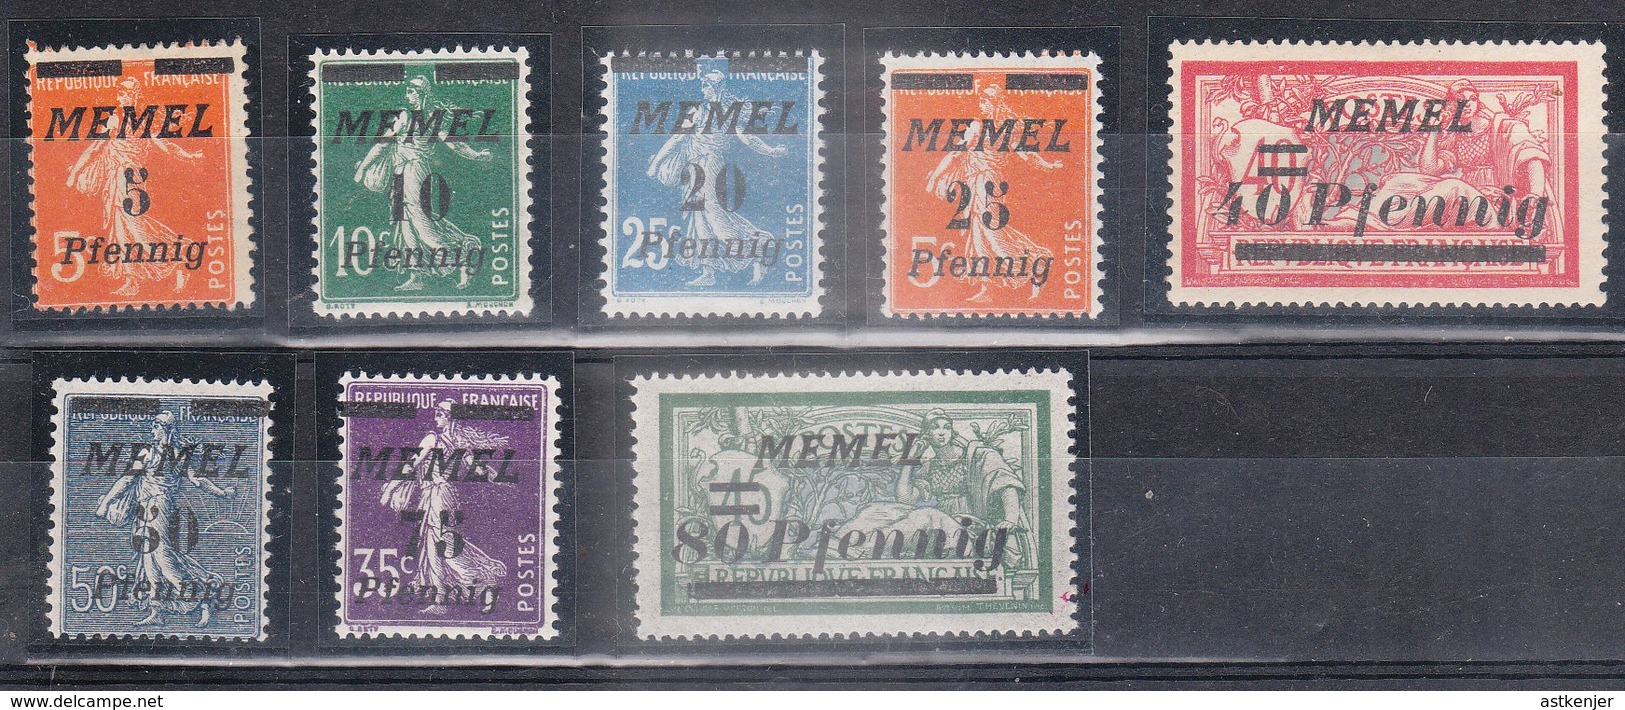 MEMEL - Petite Collection De 8 Timbres (année 1922)  - TOP AFFAIRE - Nuovi